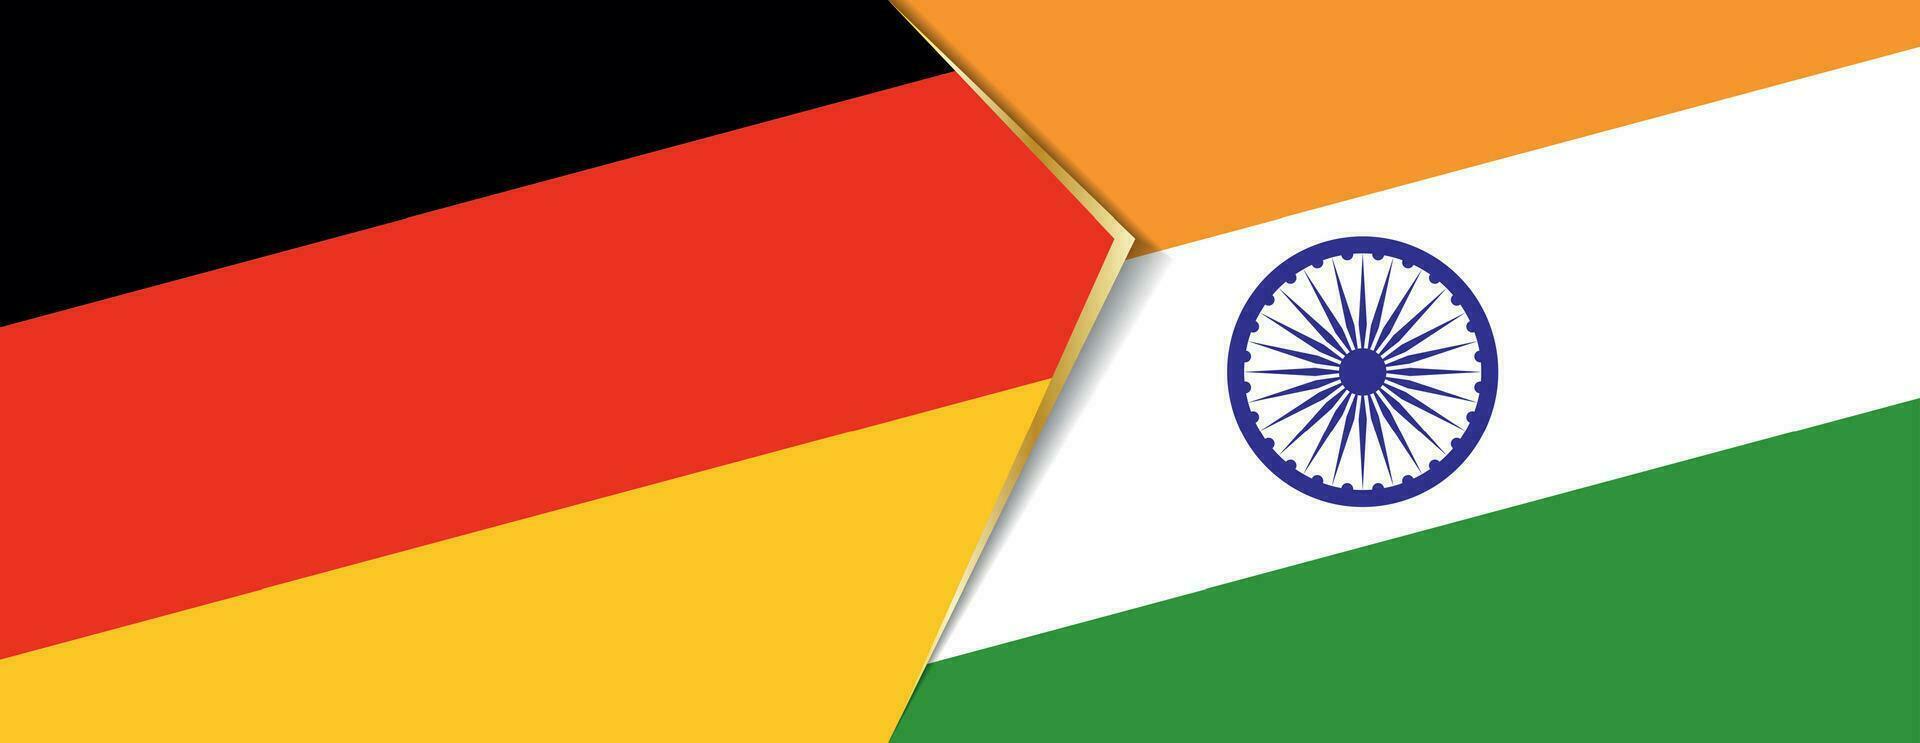 Allemagne et Inde drapeaux, deux vecteur drapeaux.